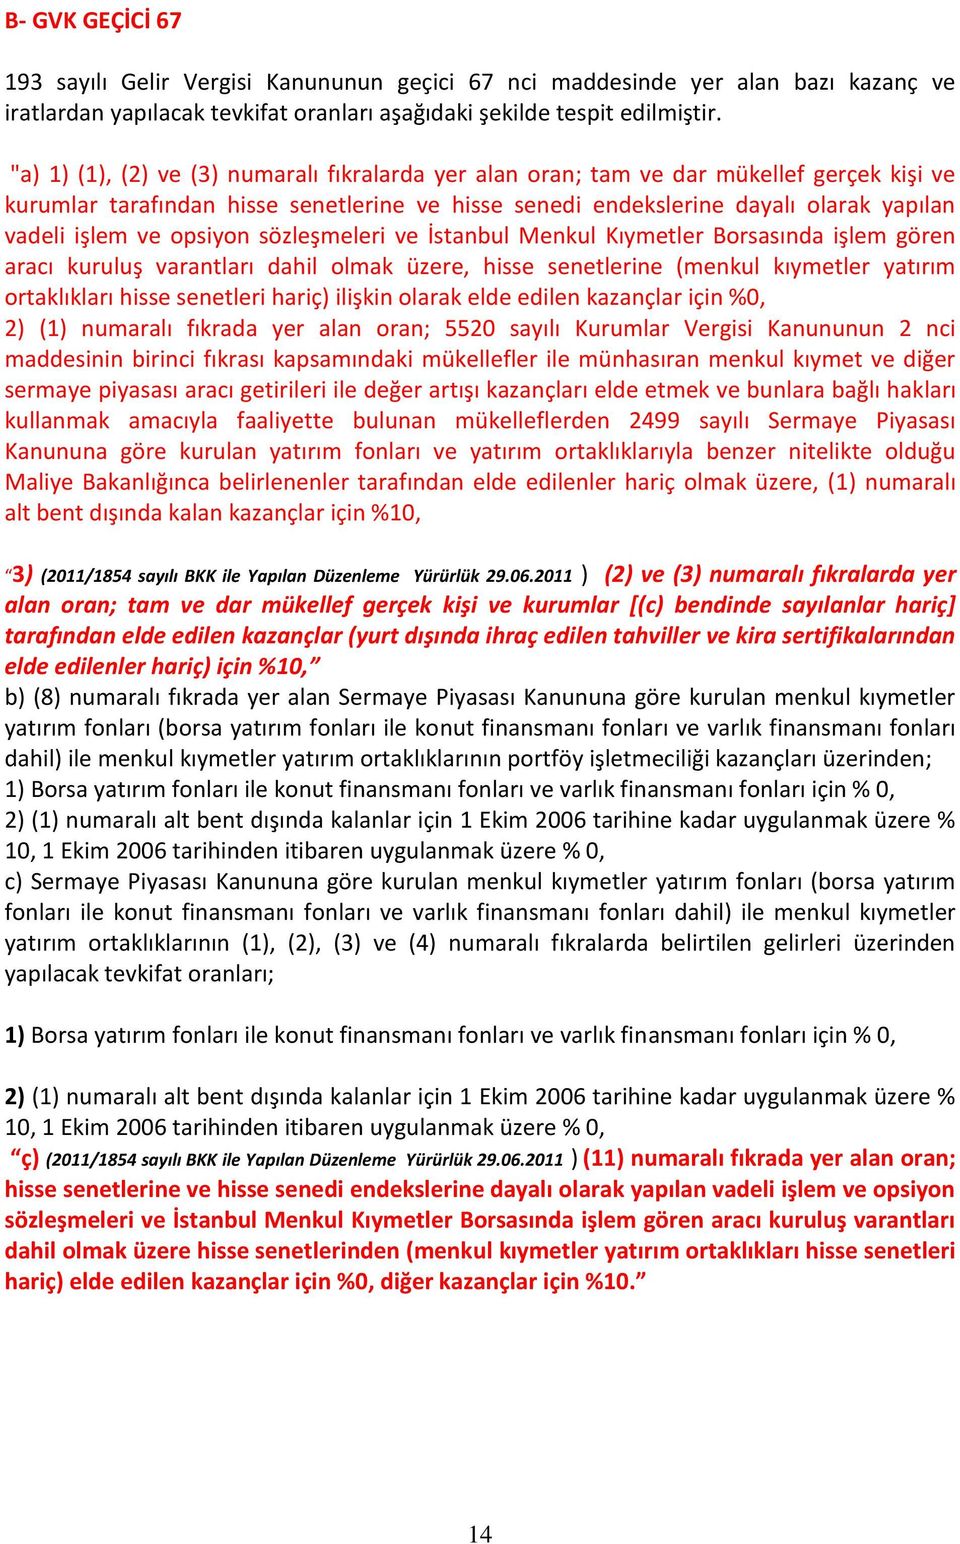 opsiyon sözleşmeleri ve İstanbul Menkul Kıymetler Borsasında işlem gören aracı kuruluş varantları dahil olmak üzere, hisse senetlerine (menkul kıymetler yatırım ortaklıkları hisse senetleri hariç)